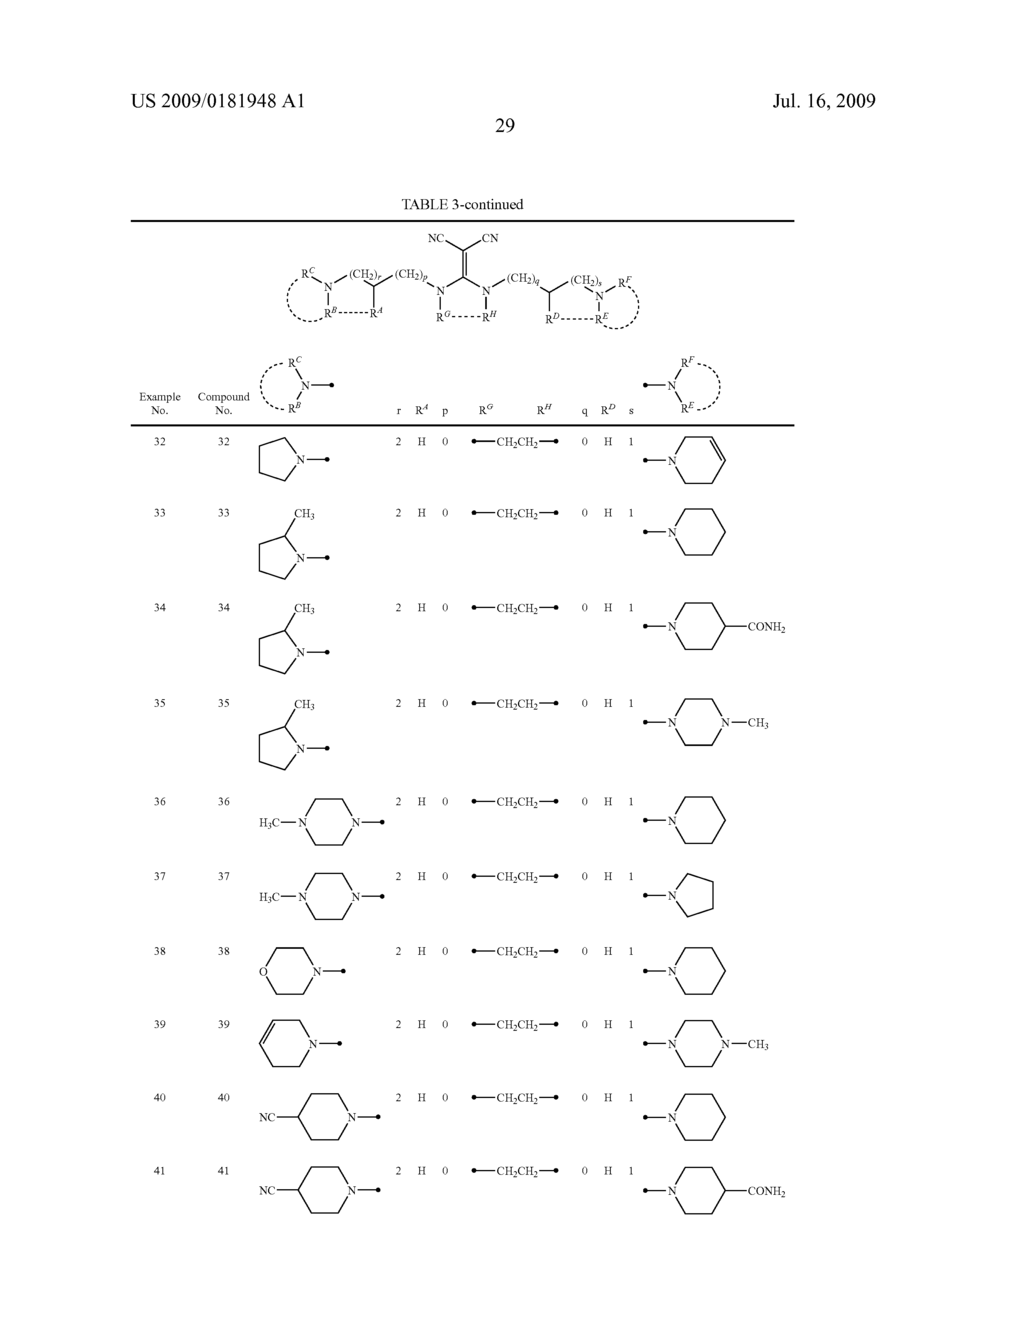 DIAMINE DERIVATIVE - diagram, schematic, and image 30